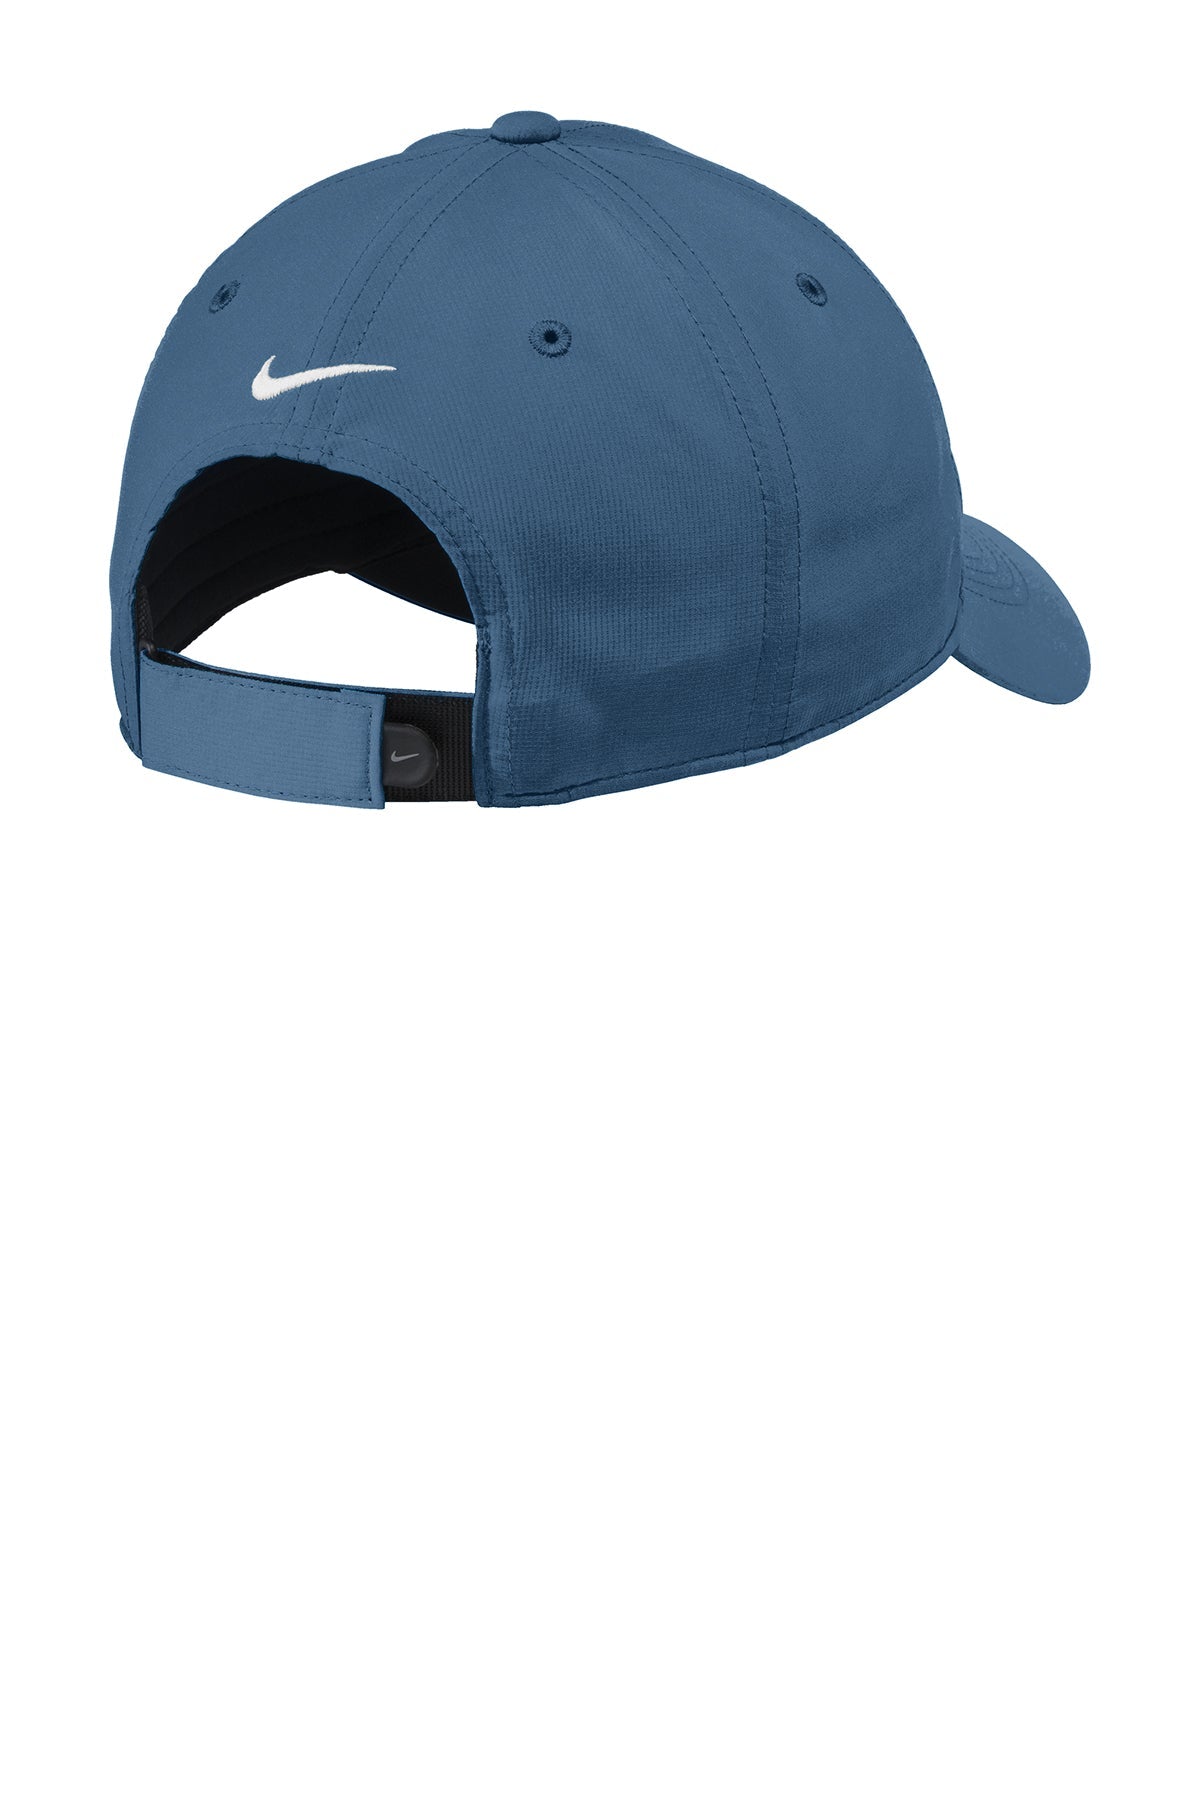 Nike Dri-FIT Tech Custom Caps, Navy